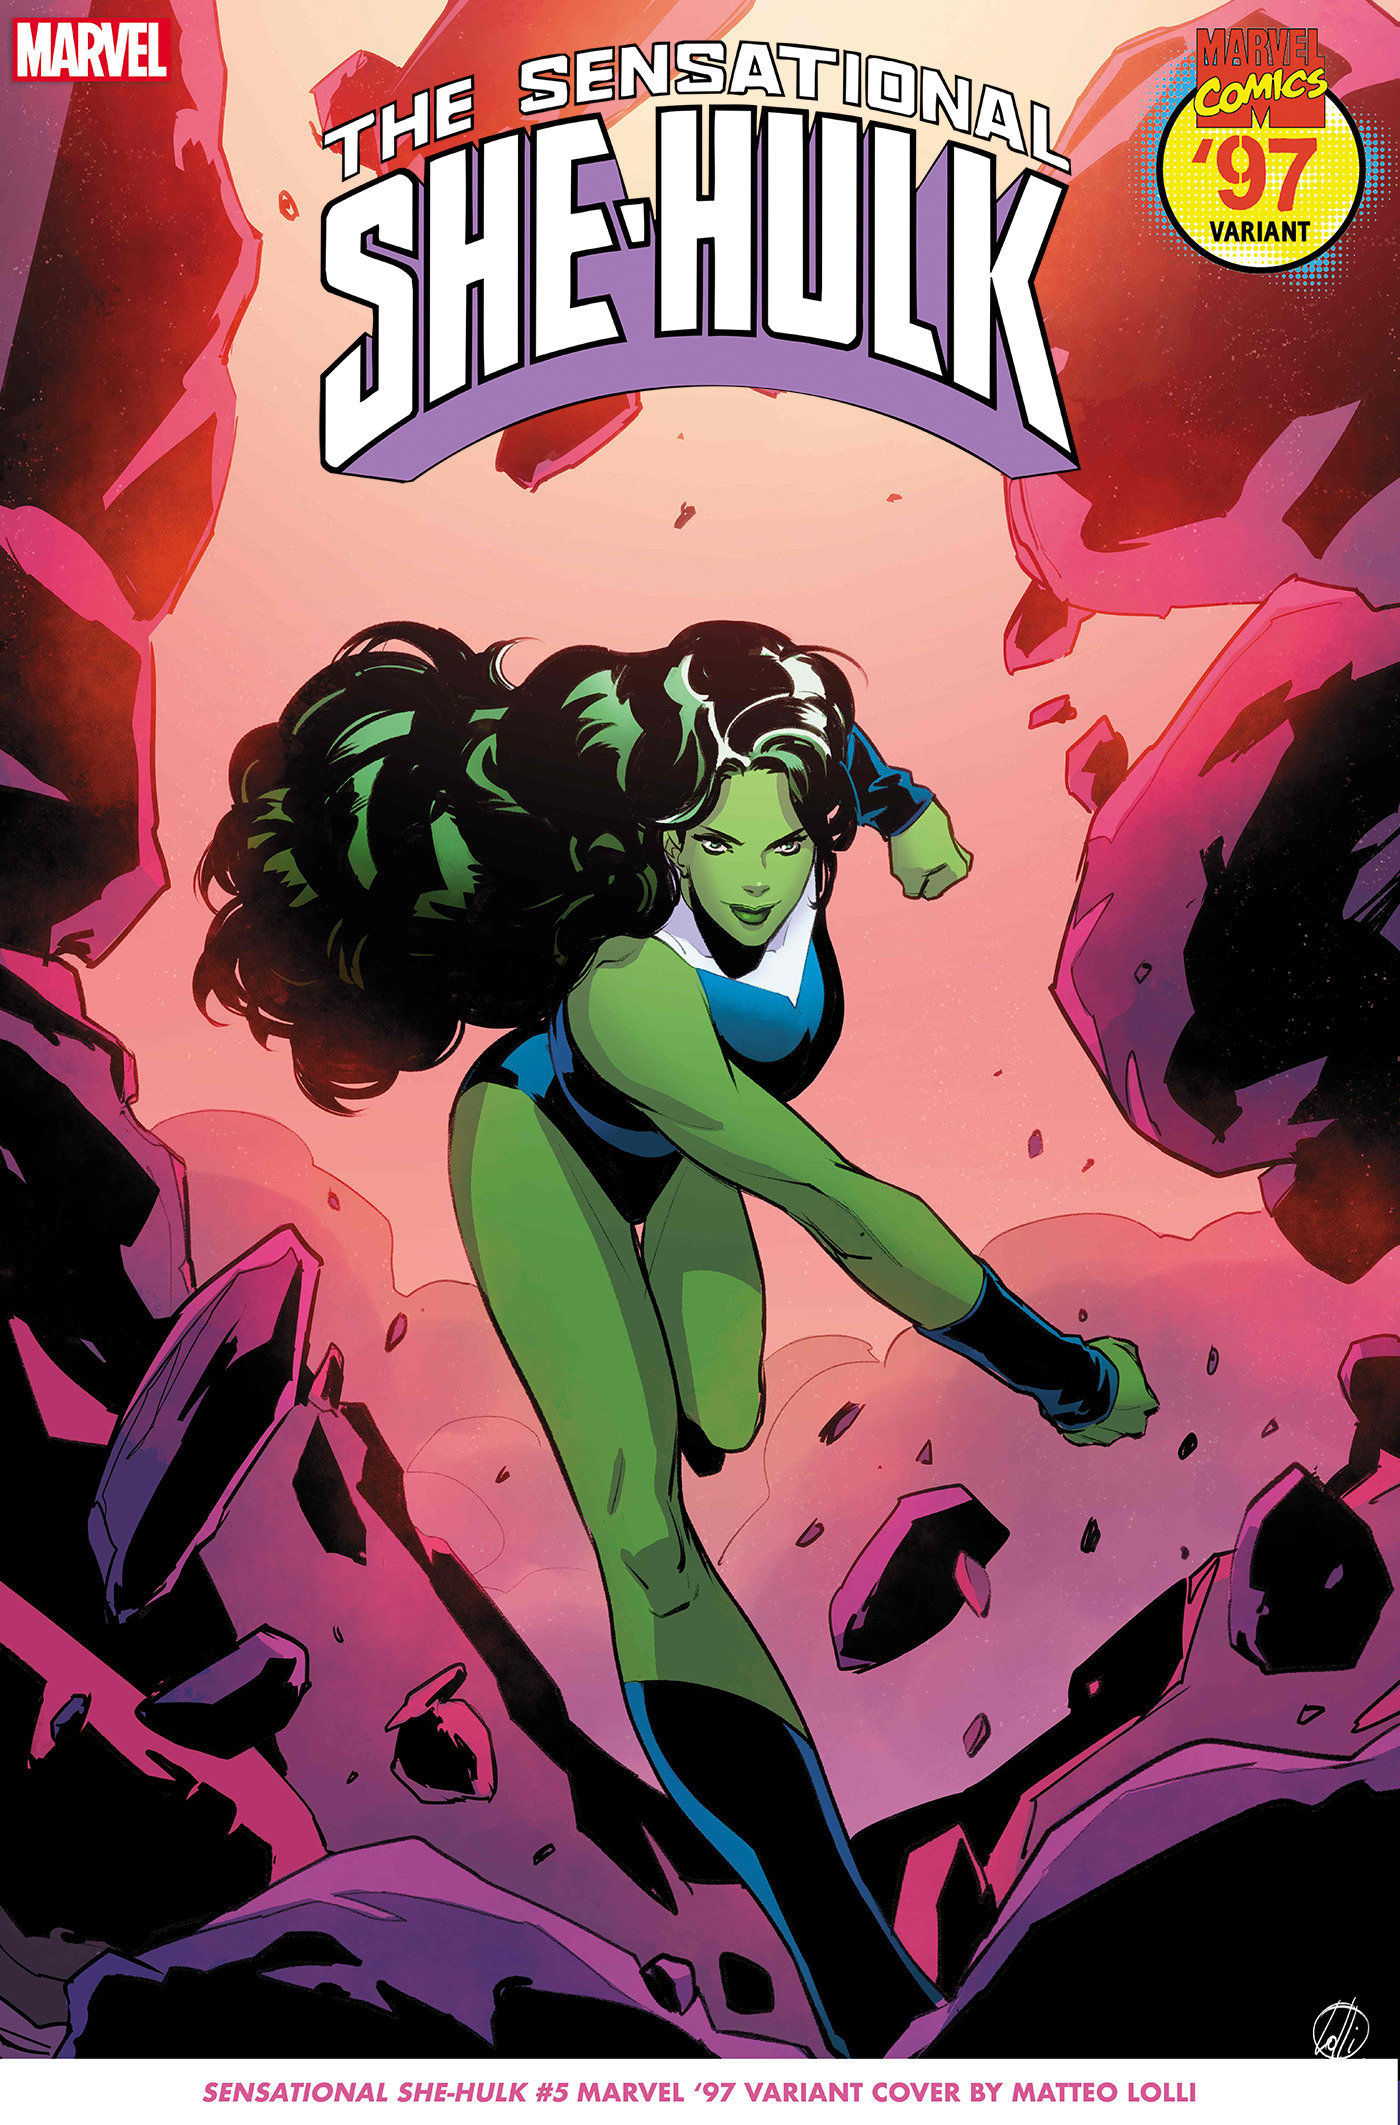 Sensational She-Hulk #5 Matteo Lolli Marvel 97 Variant